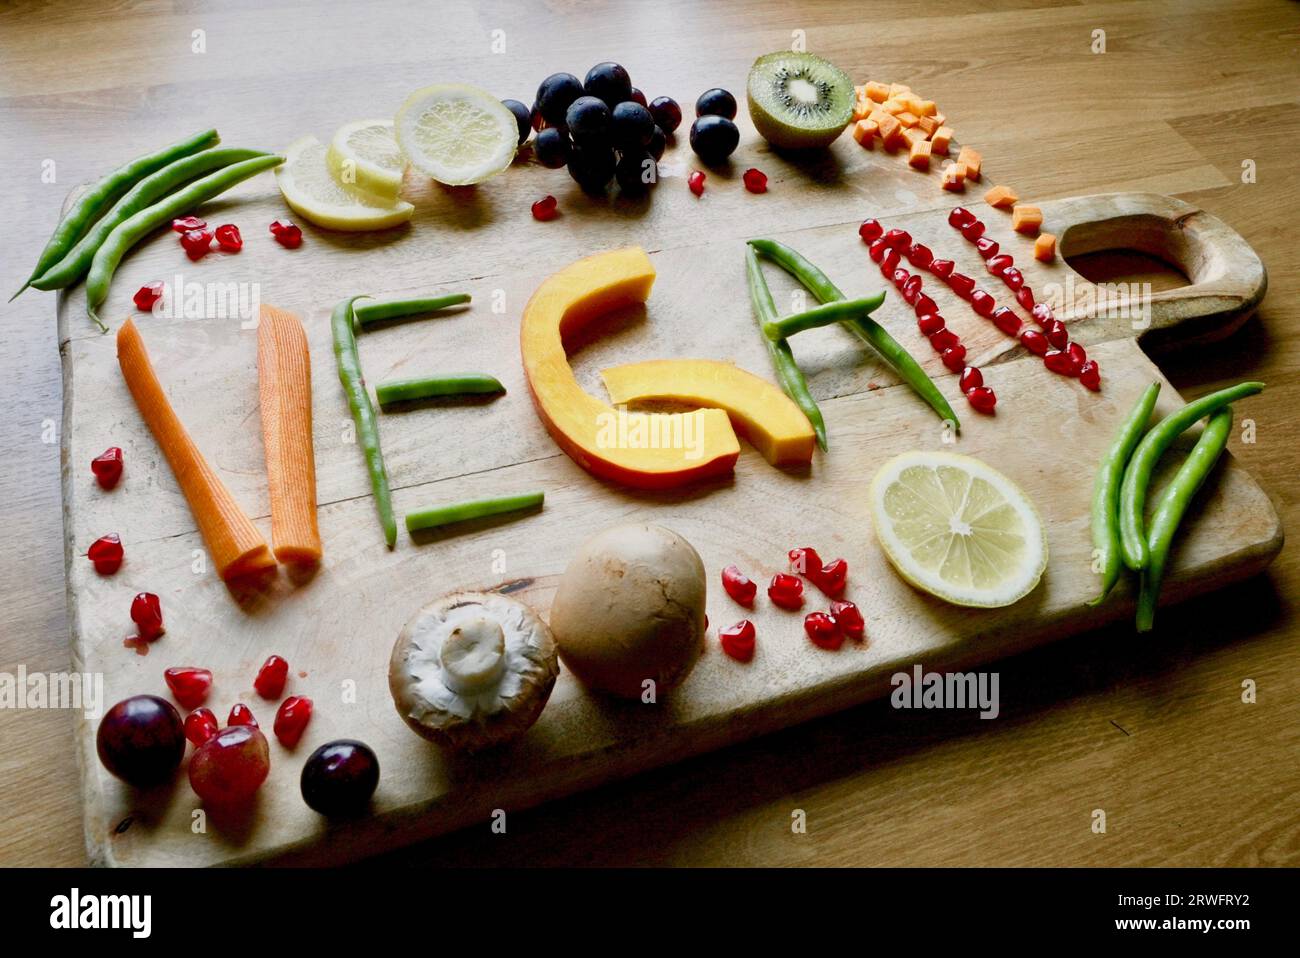 Vegane Ernährung enthält viel Obst, Gemüse und rohkost Foto Stock